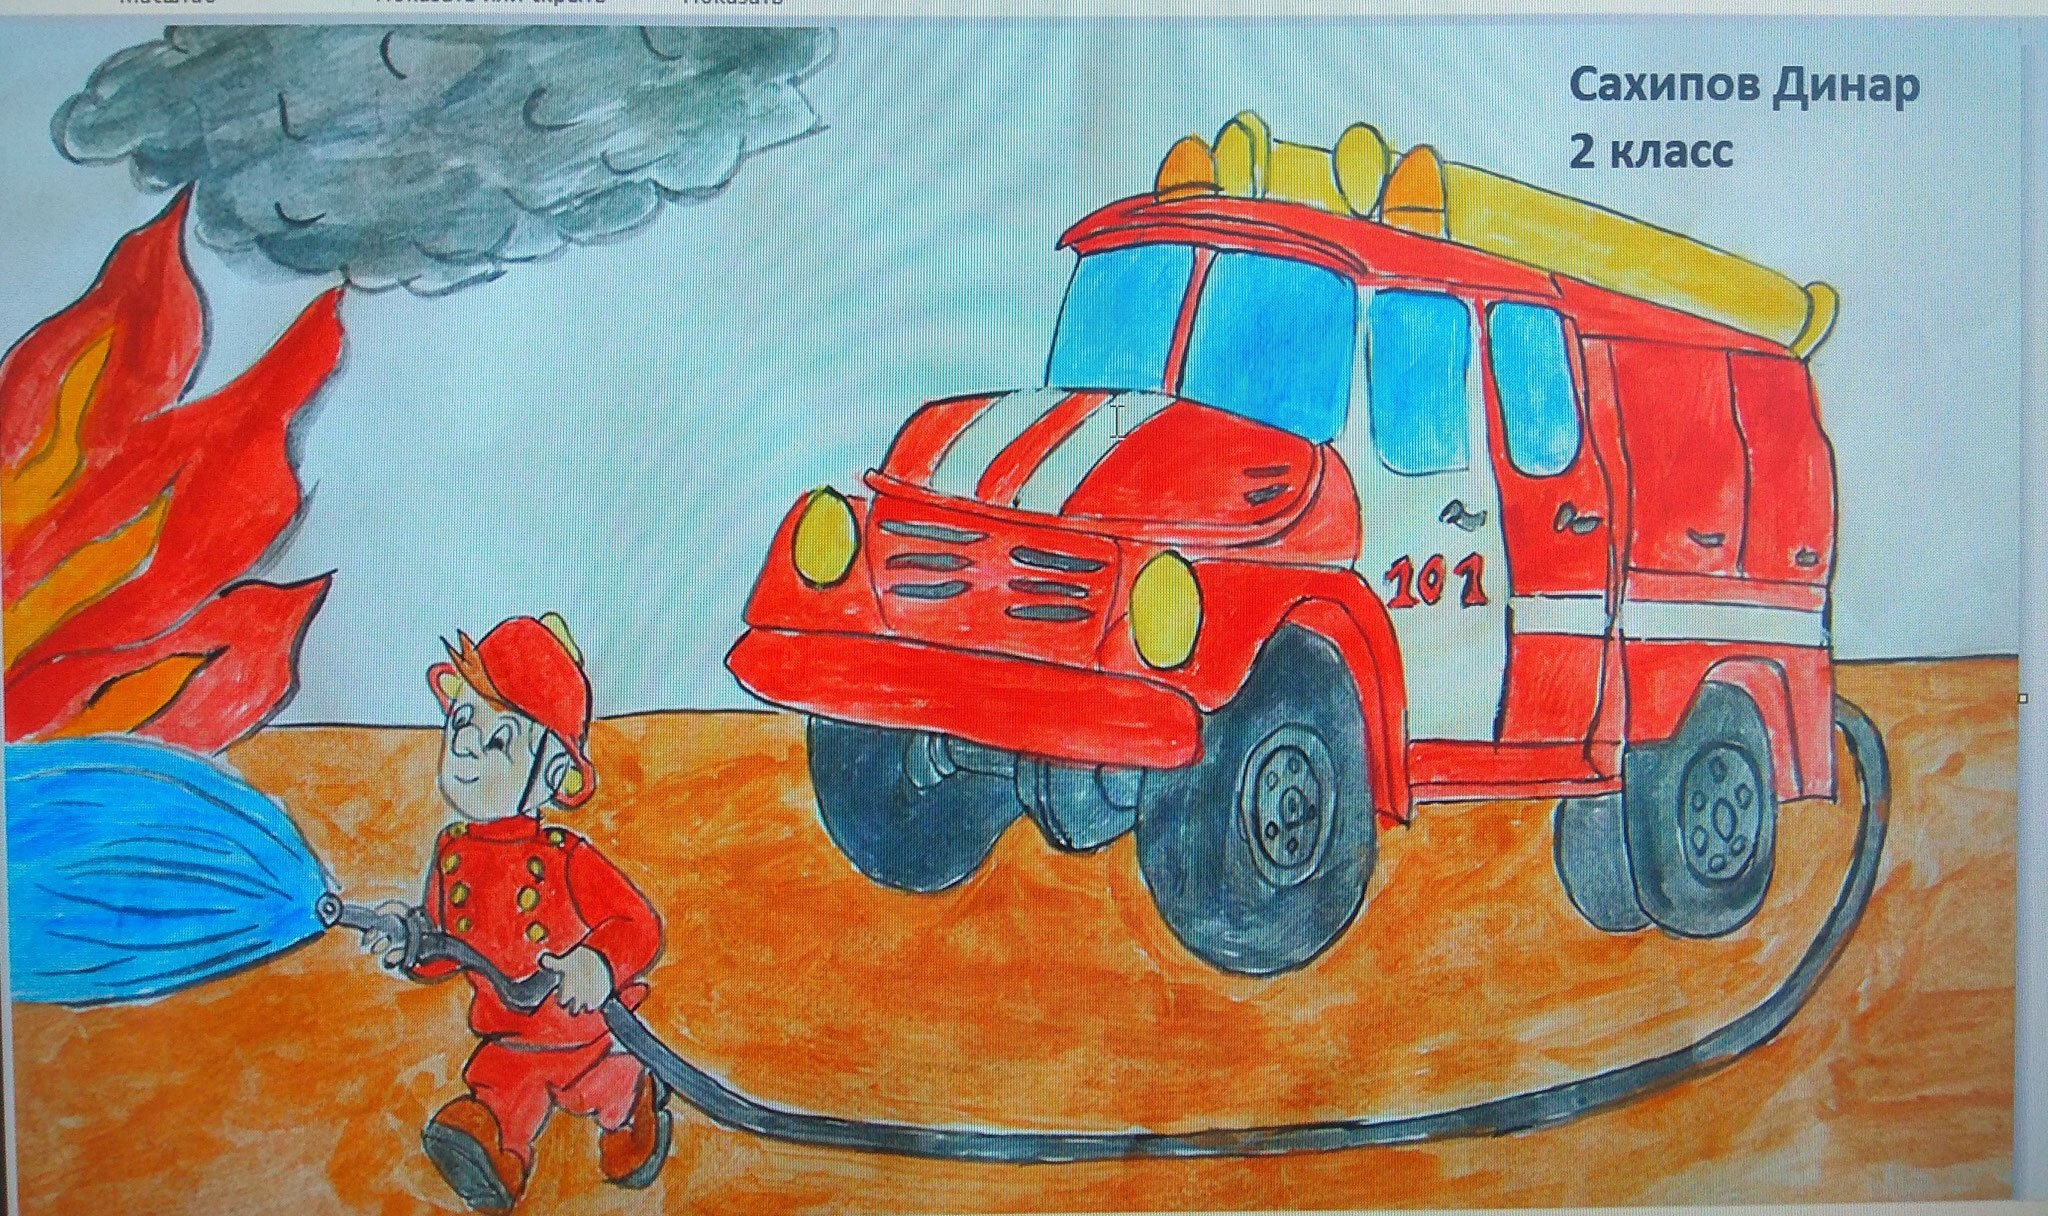 Рисунок на тему пожарная охрана. Рисунок пожарная безопасность. Рисунок на пожарную тему. Рисунки пожарных машин и Пожарников. Противопожарная тематика для детей.